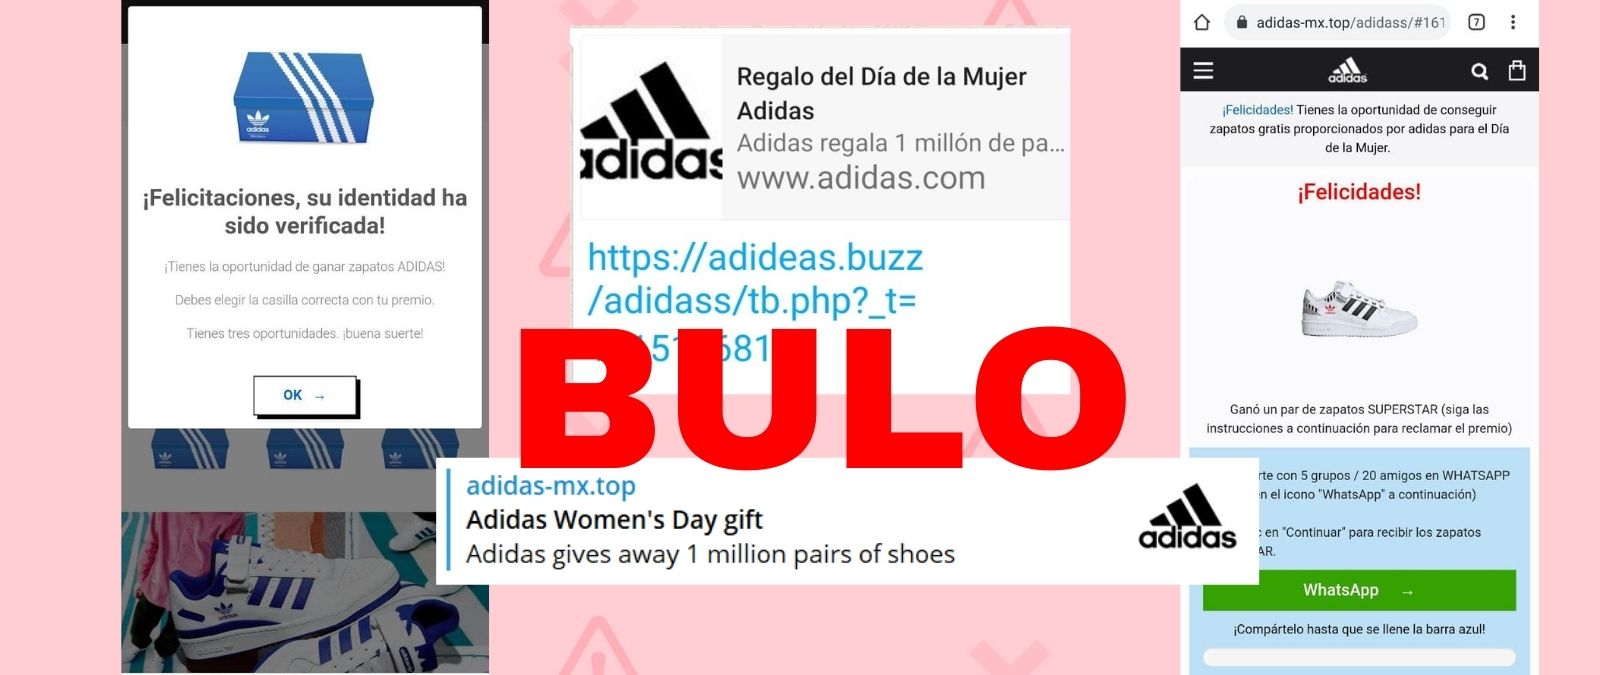 Desempacando Magnético popurrí Cuidado con este supuesto regalo de Adidas por el Día de la Mujer: es  phishing - Maldita.es